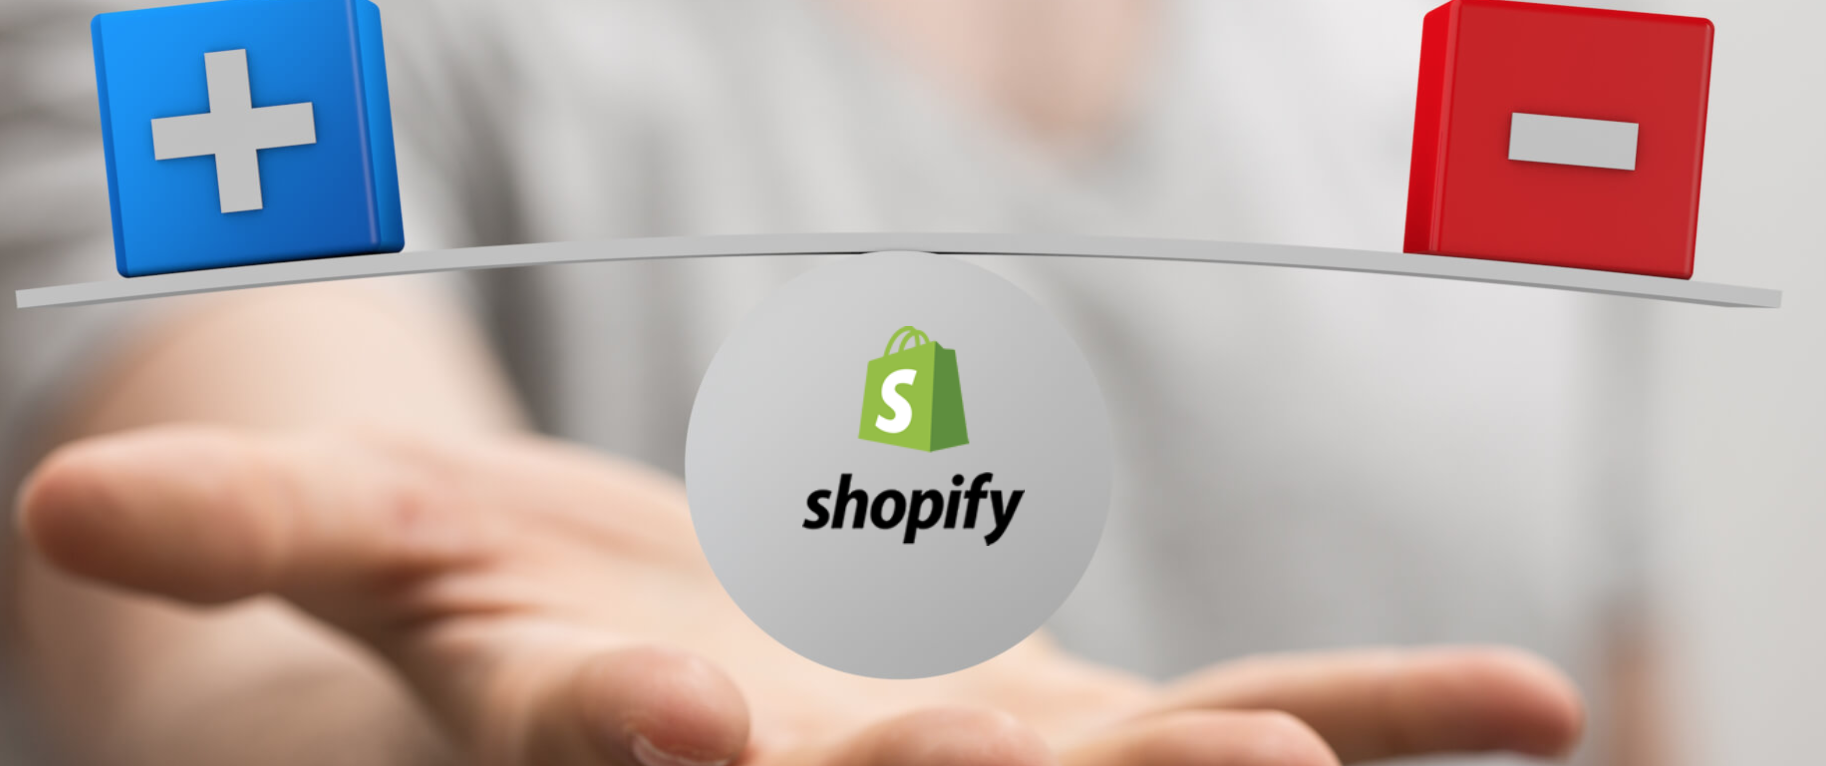 I vantaggi di Shopify: 10 motivi per scegliere Shopify e non gli altri e-commerce